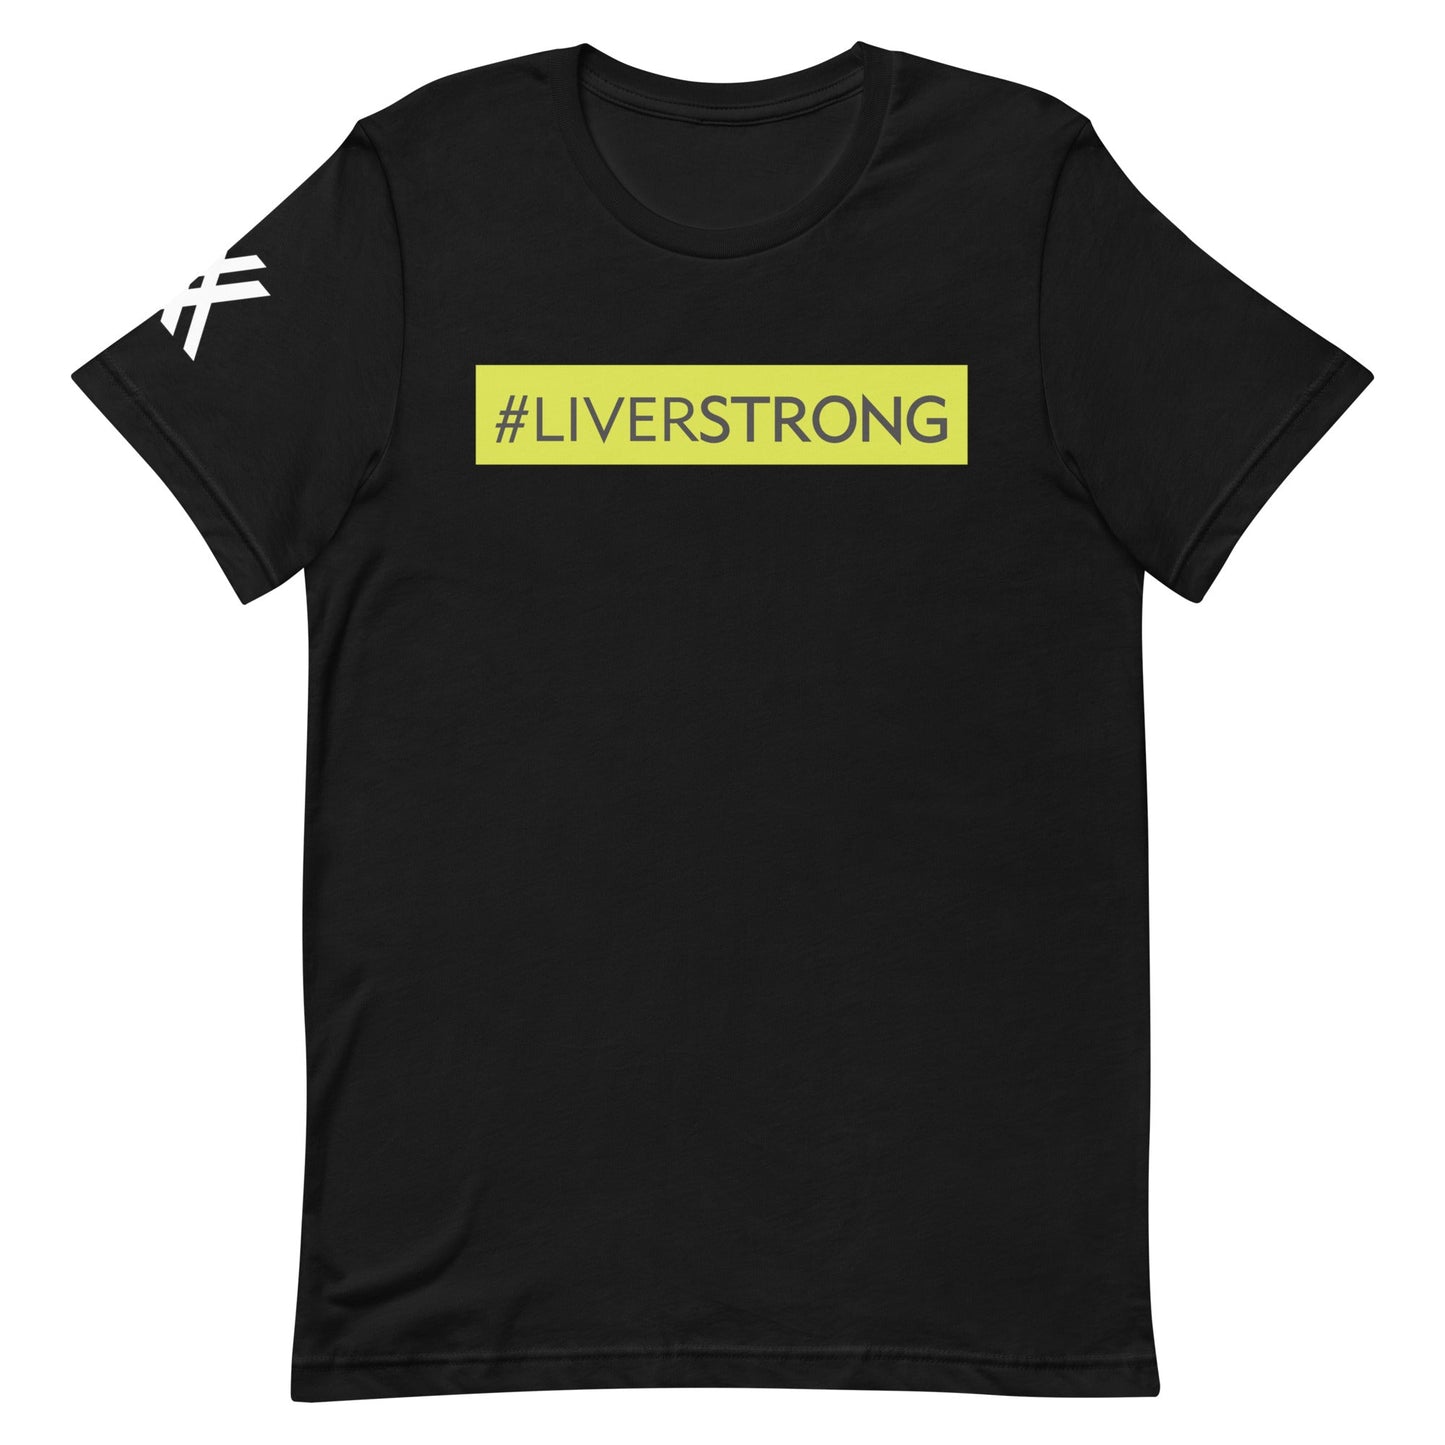 #LIVERSTRONG Short-Sleeve Unisex T-Shirt